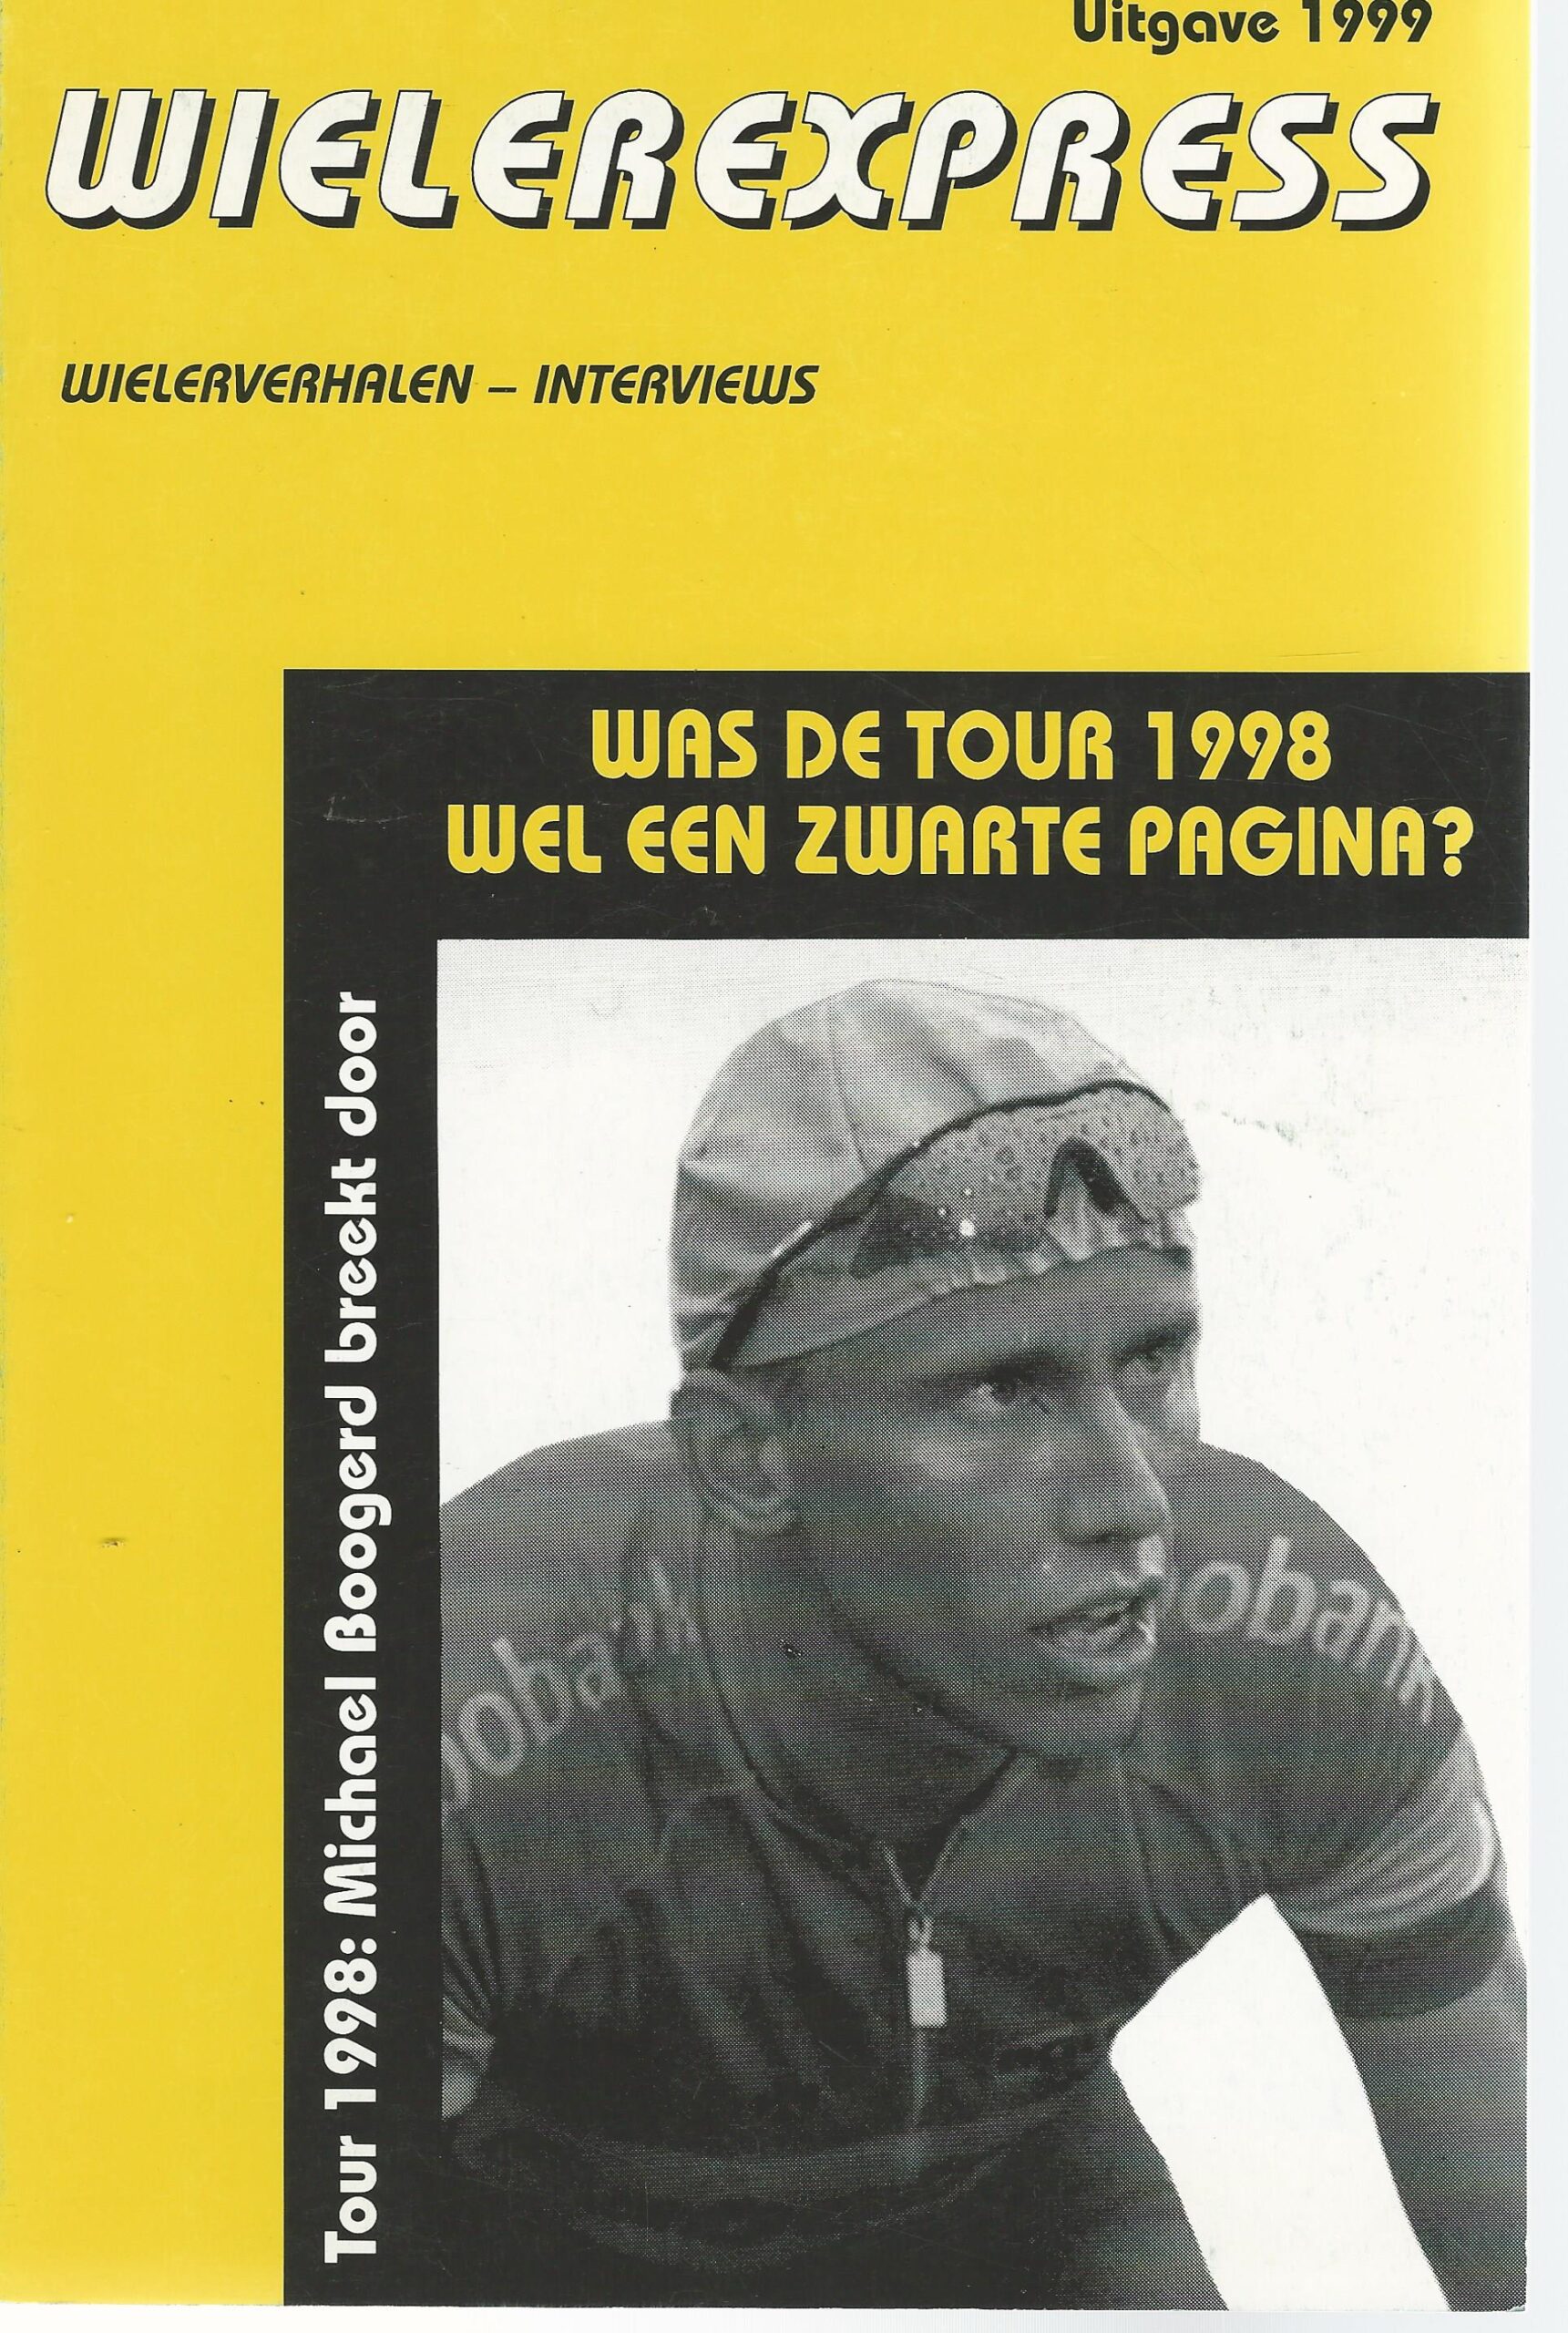 Zomer, Jan - Wielerexpress 1999 -Wielerverhalen - interviews